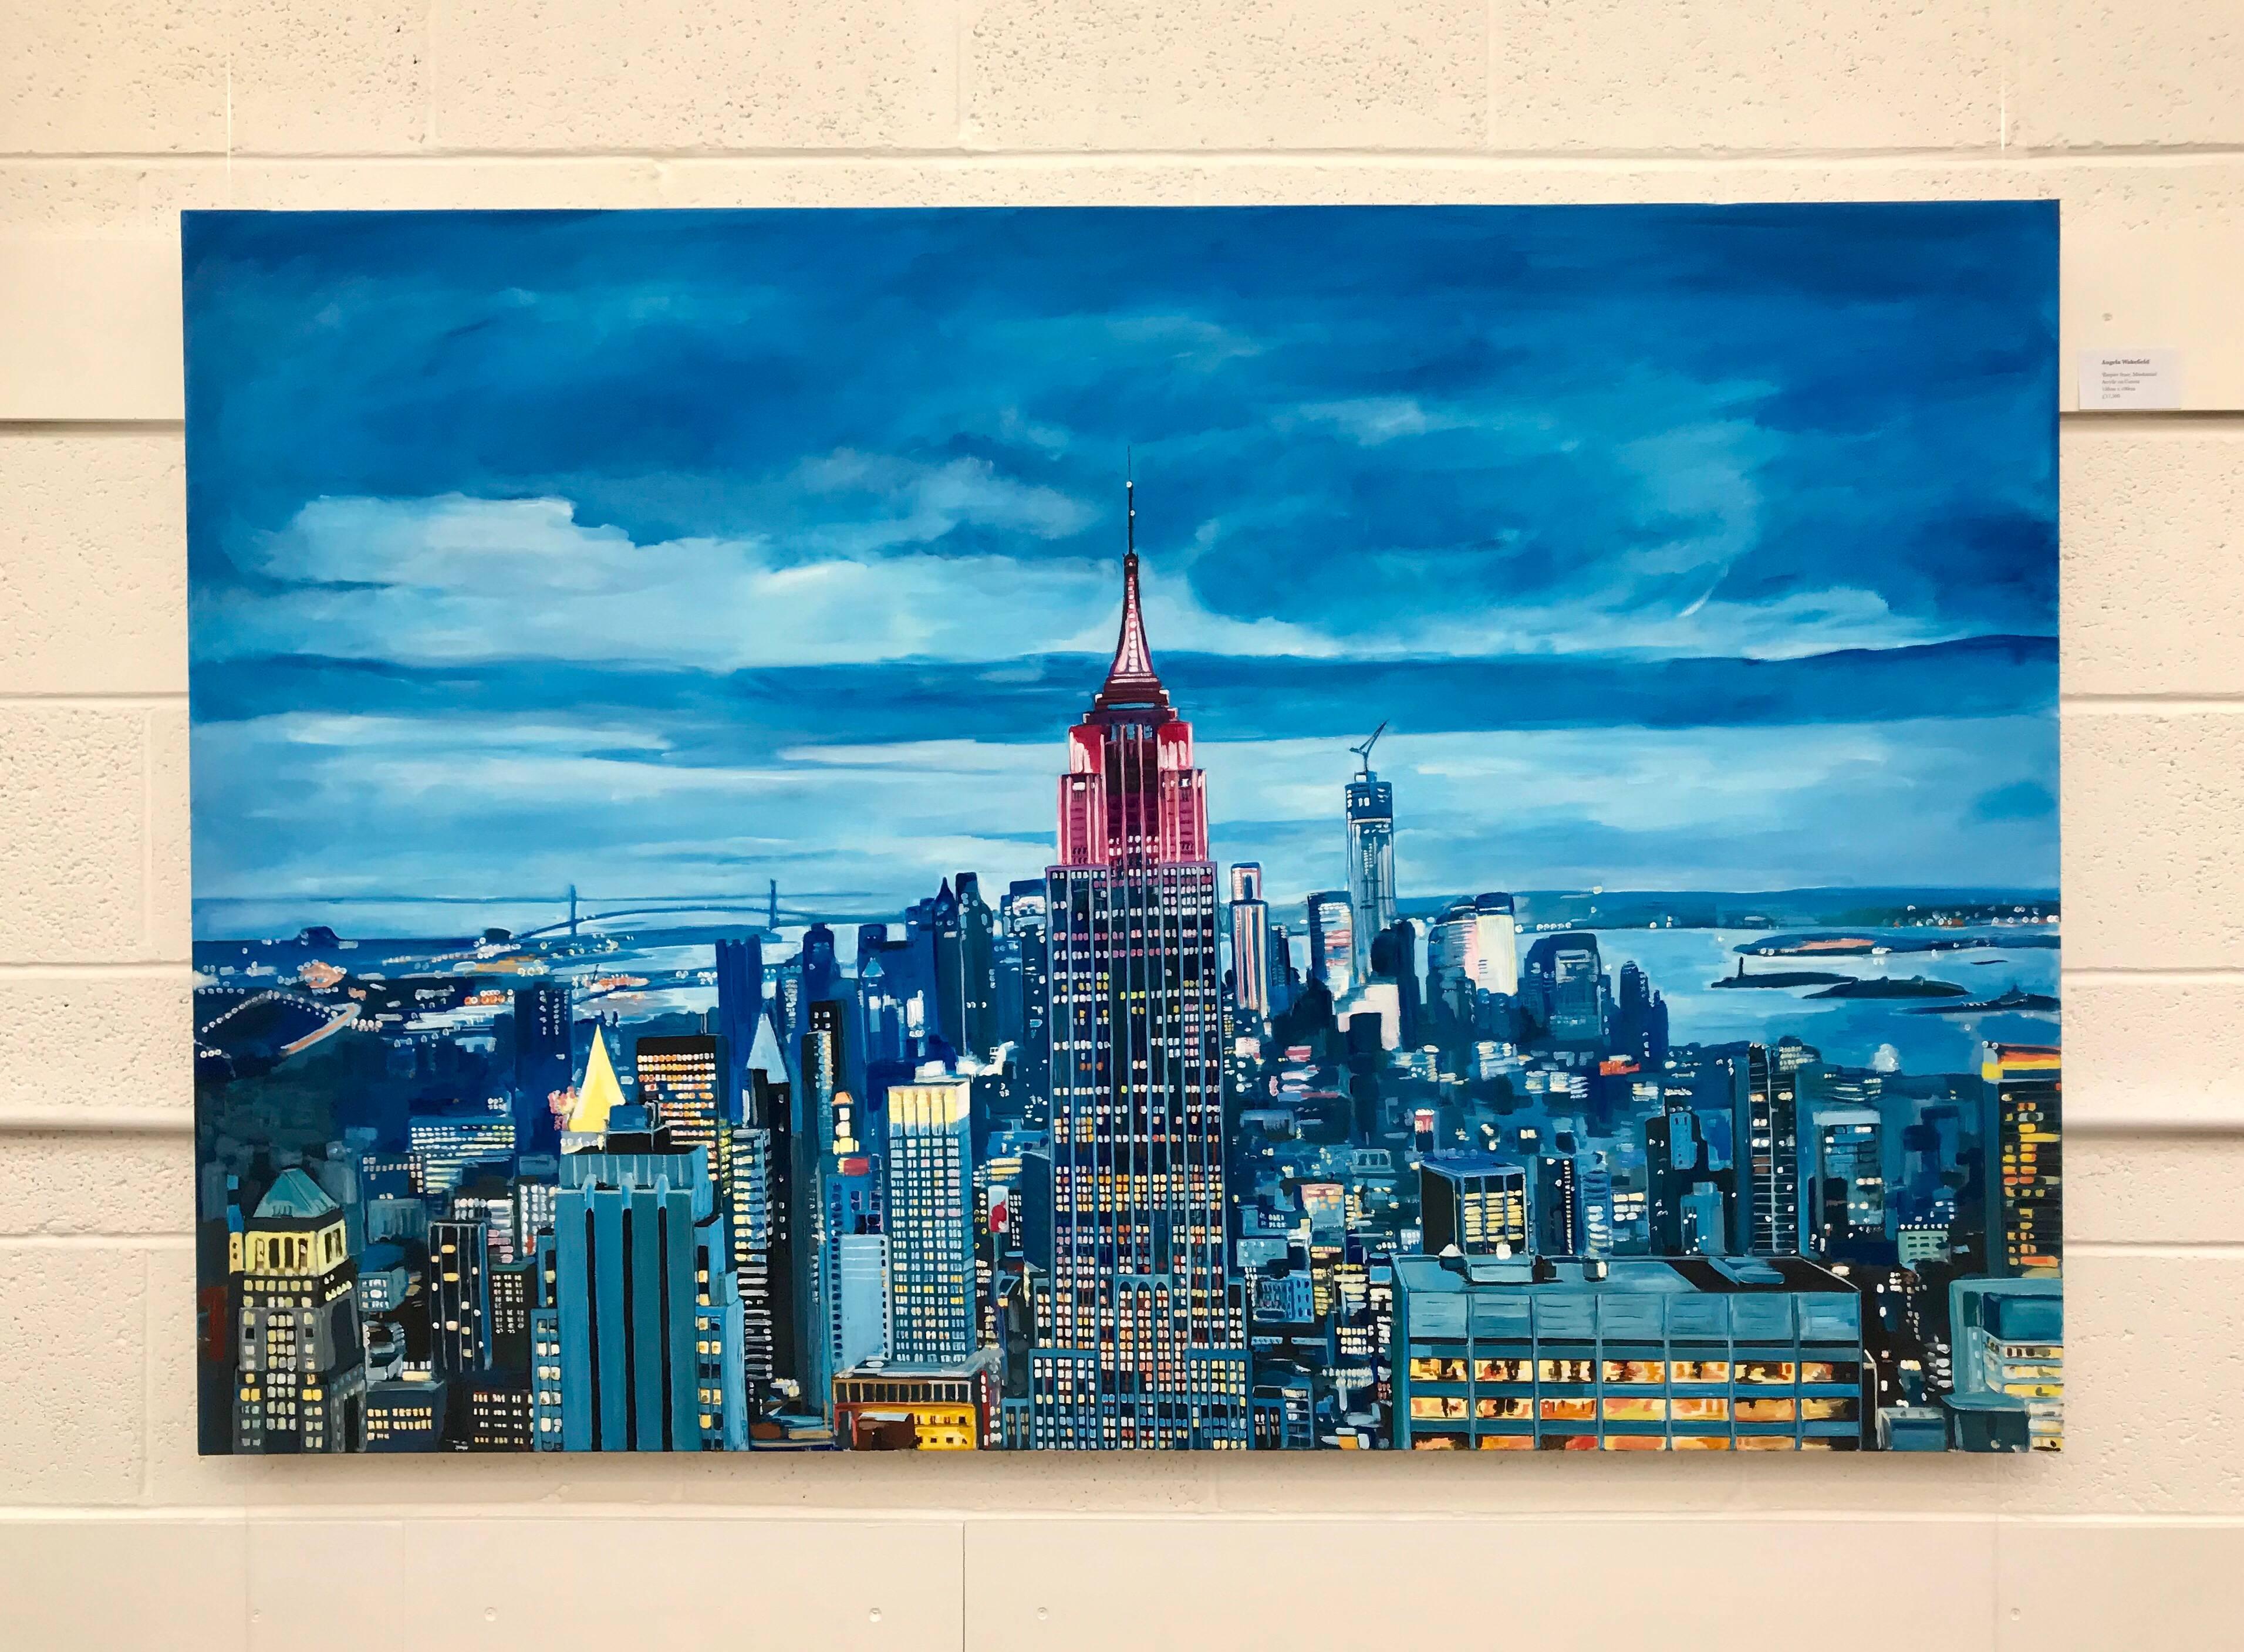 Empire State Building, Manhattan, Stadtbild, New York, von britischem Landschaftsmaler. 

Kunst misst 60 x 40 Zoll 

Wakefields Werk ist eine einzigartige Mischung aus Abstraktion und Realismus, wobei der Schwerpunkt auf der Farbe liegt. Ihre Bilder